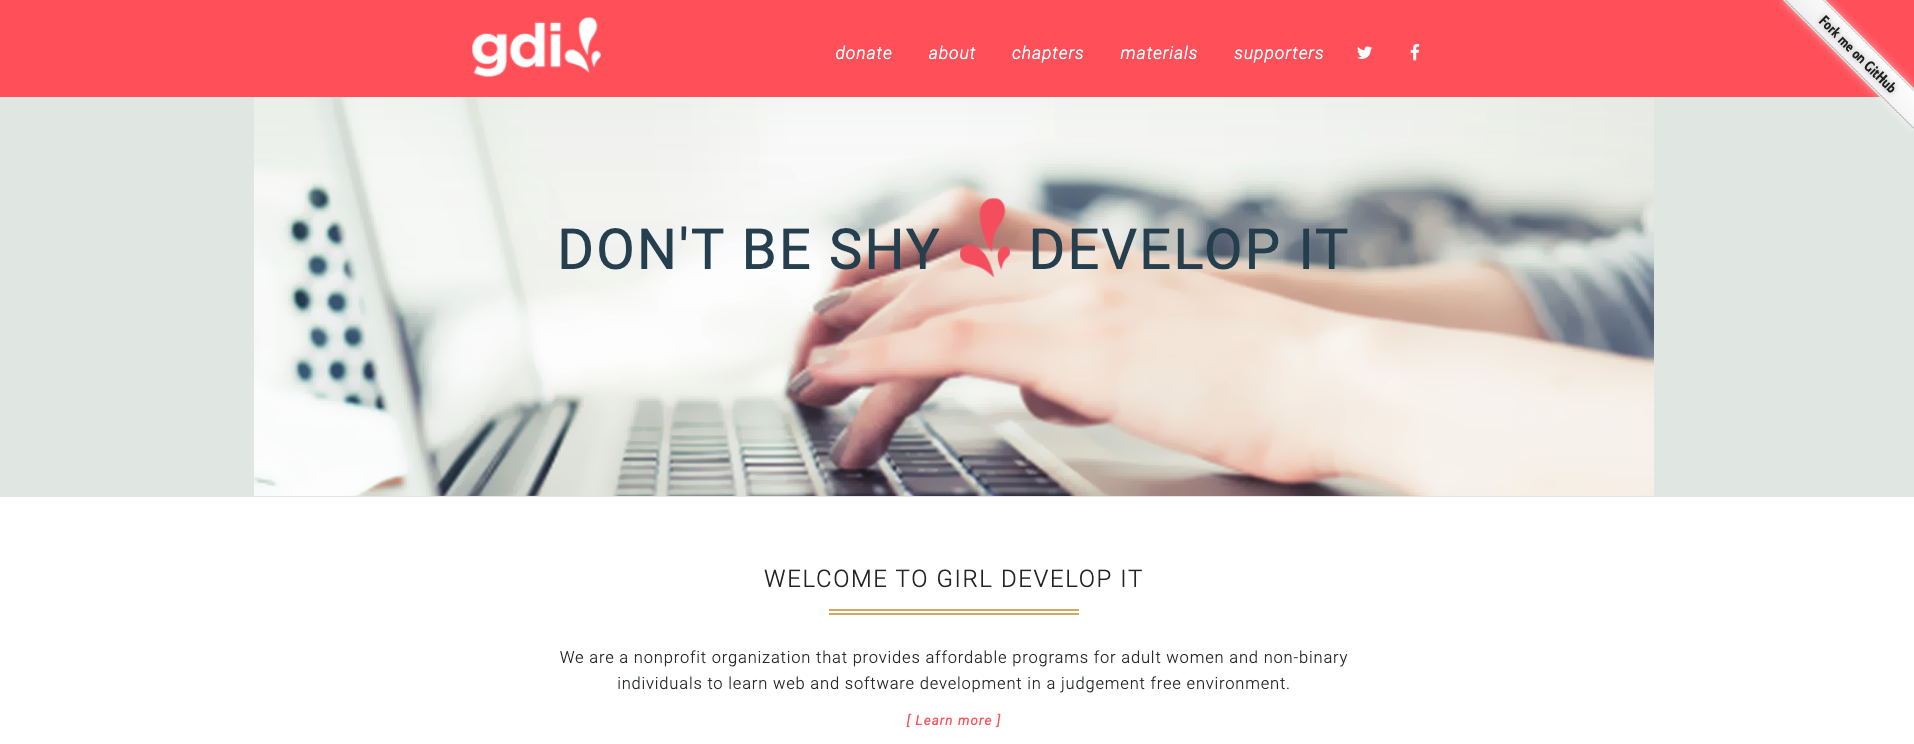 Girldevelopit Website